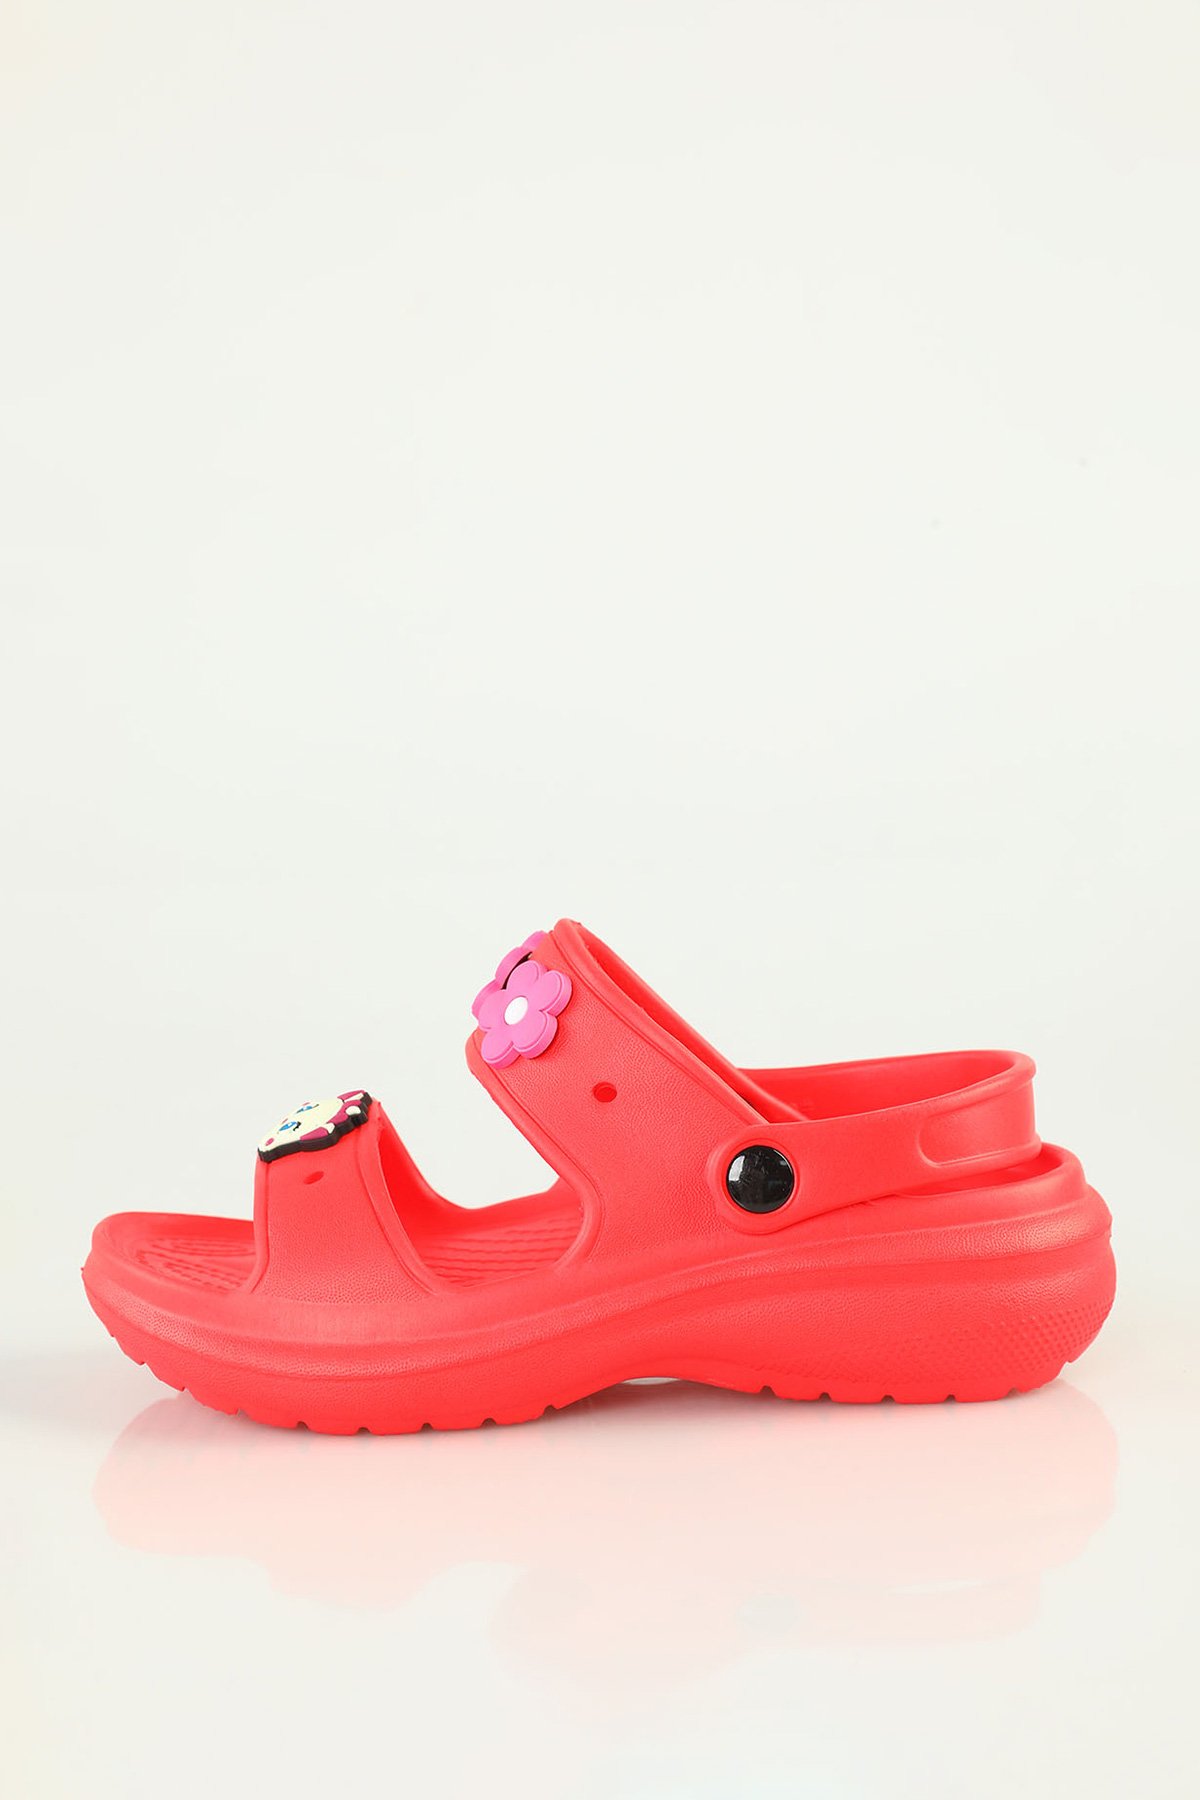 Kız Çocuk Günlük Rahat Sandalet Terlik Kırmızı 500789 - tozlu.com